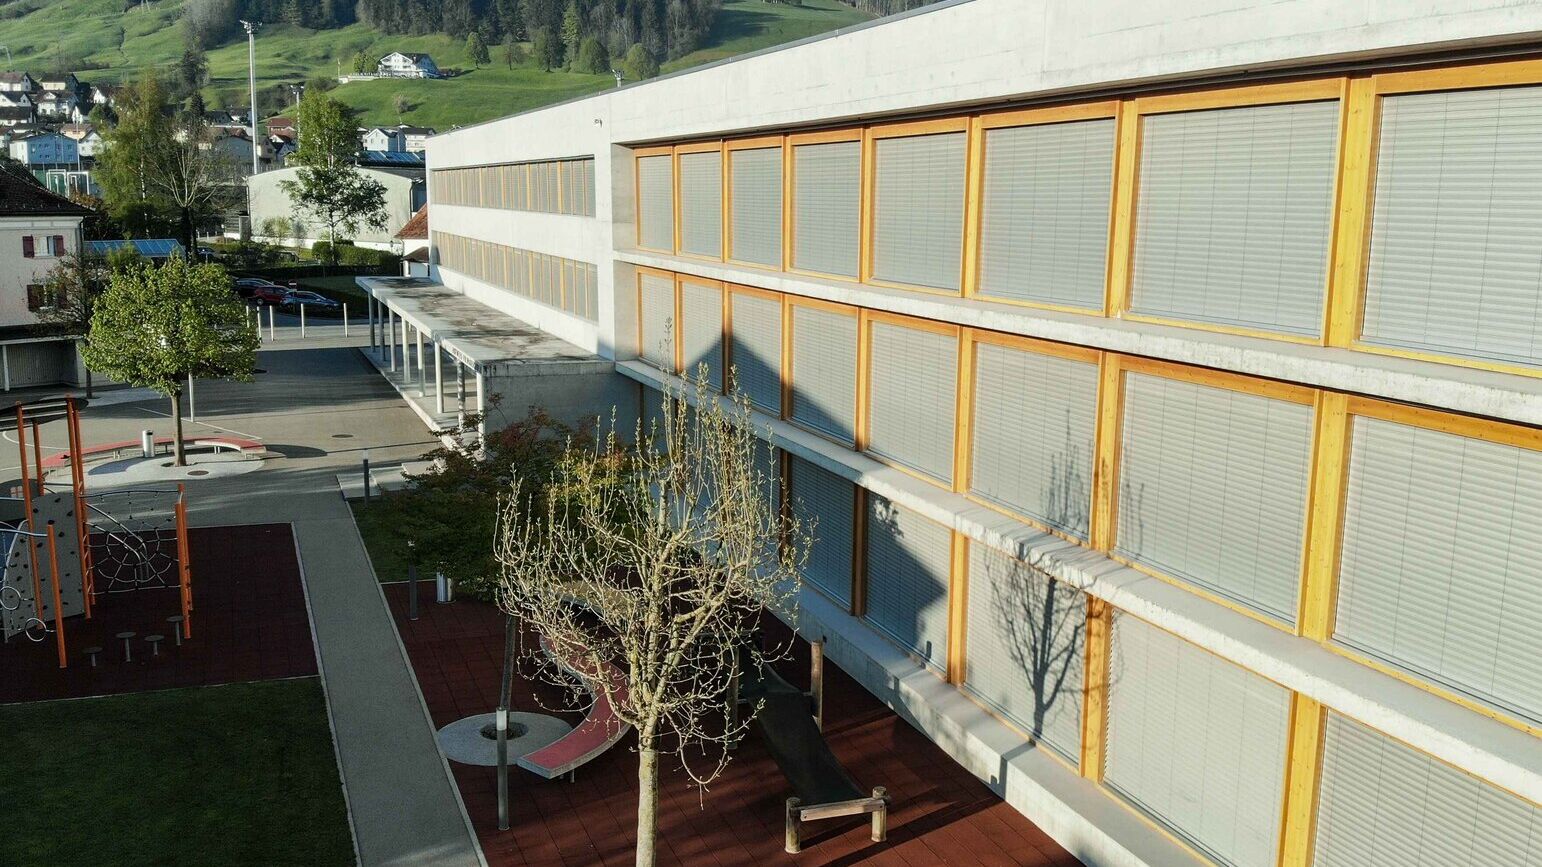 Il sistema educativo in Appenzell: la scuola elementare o primaria Hofwies 1 di Appenzello